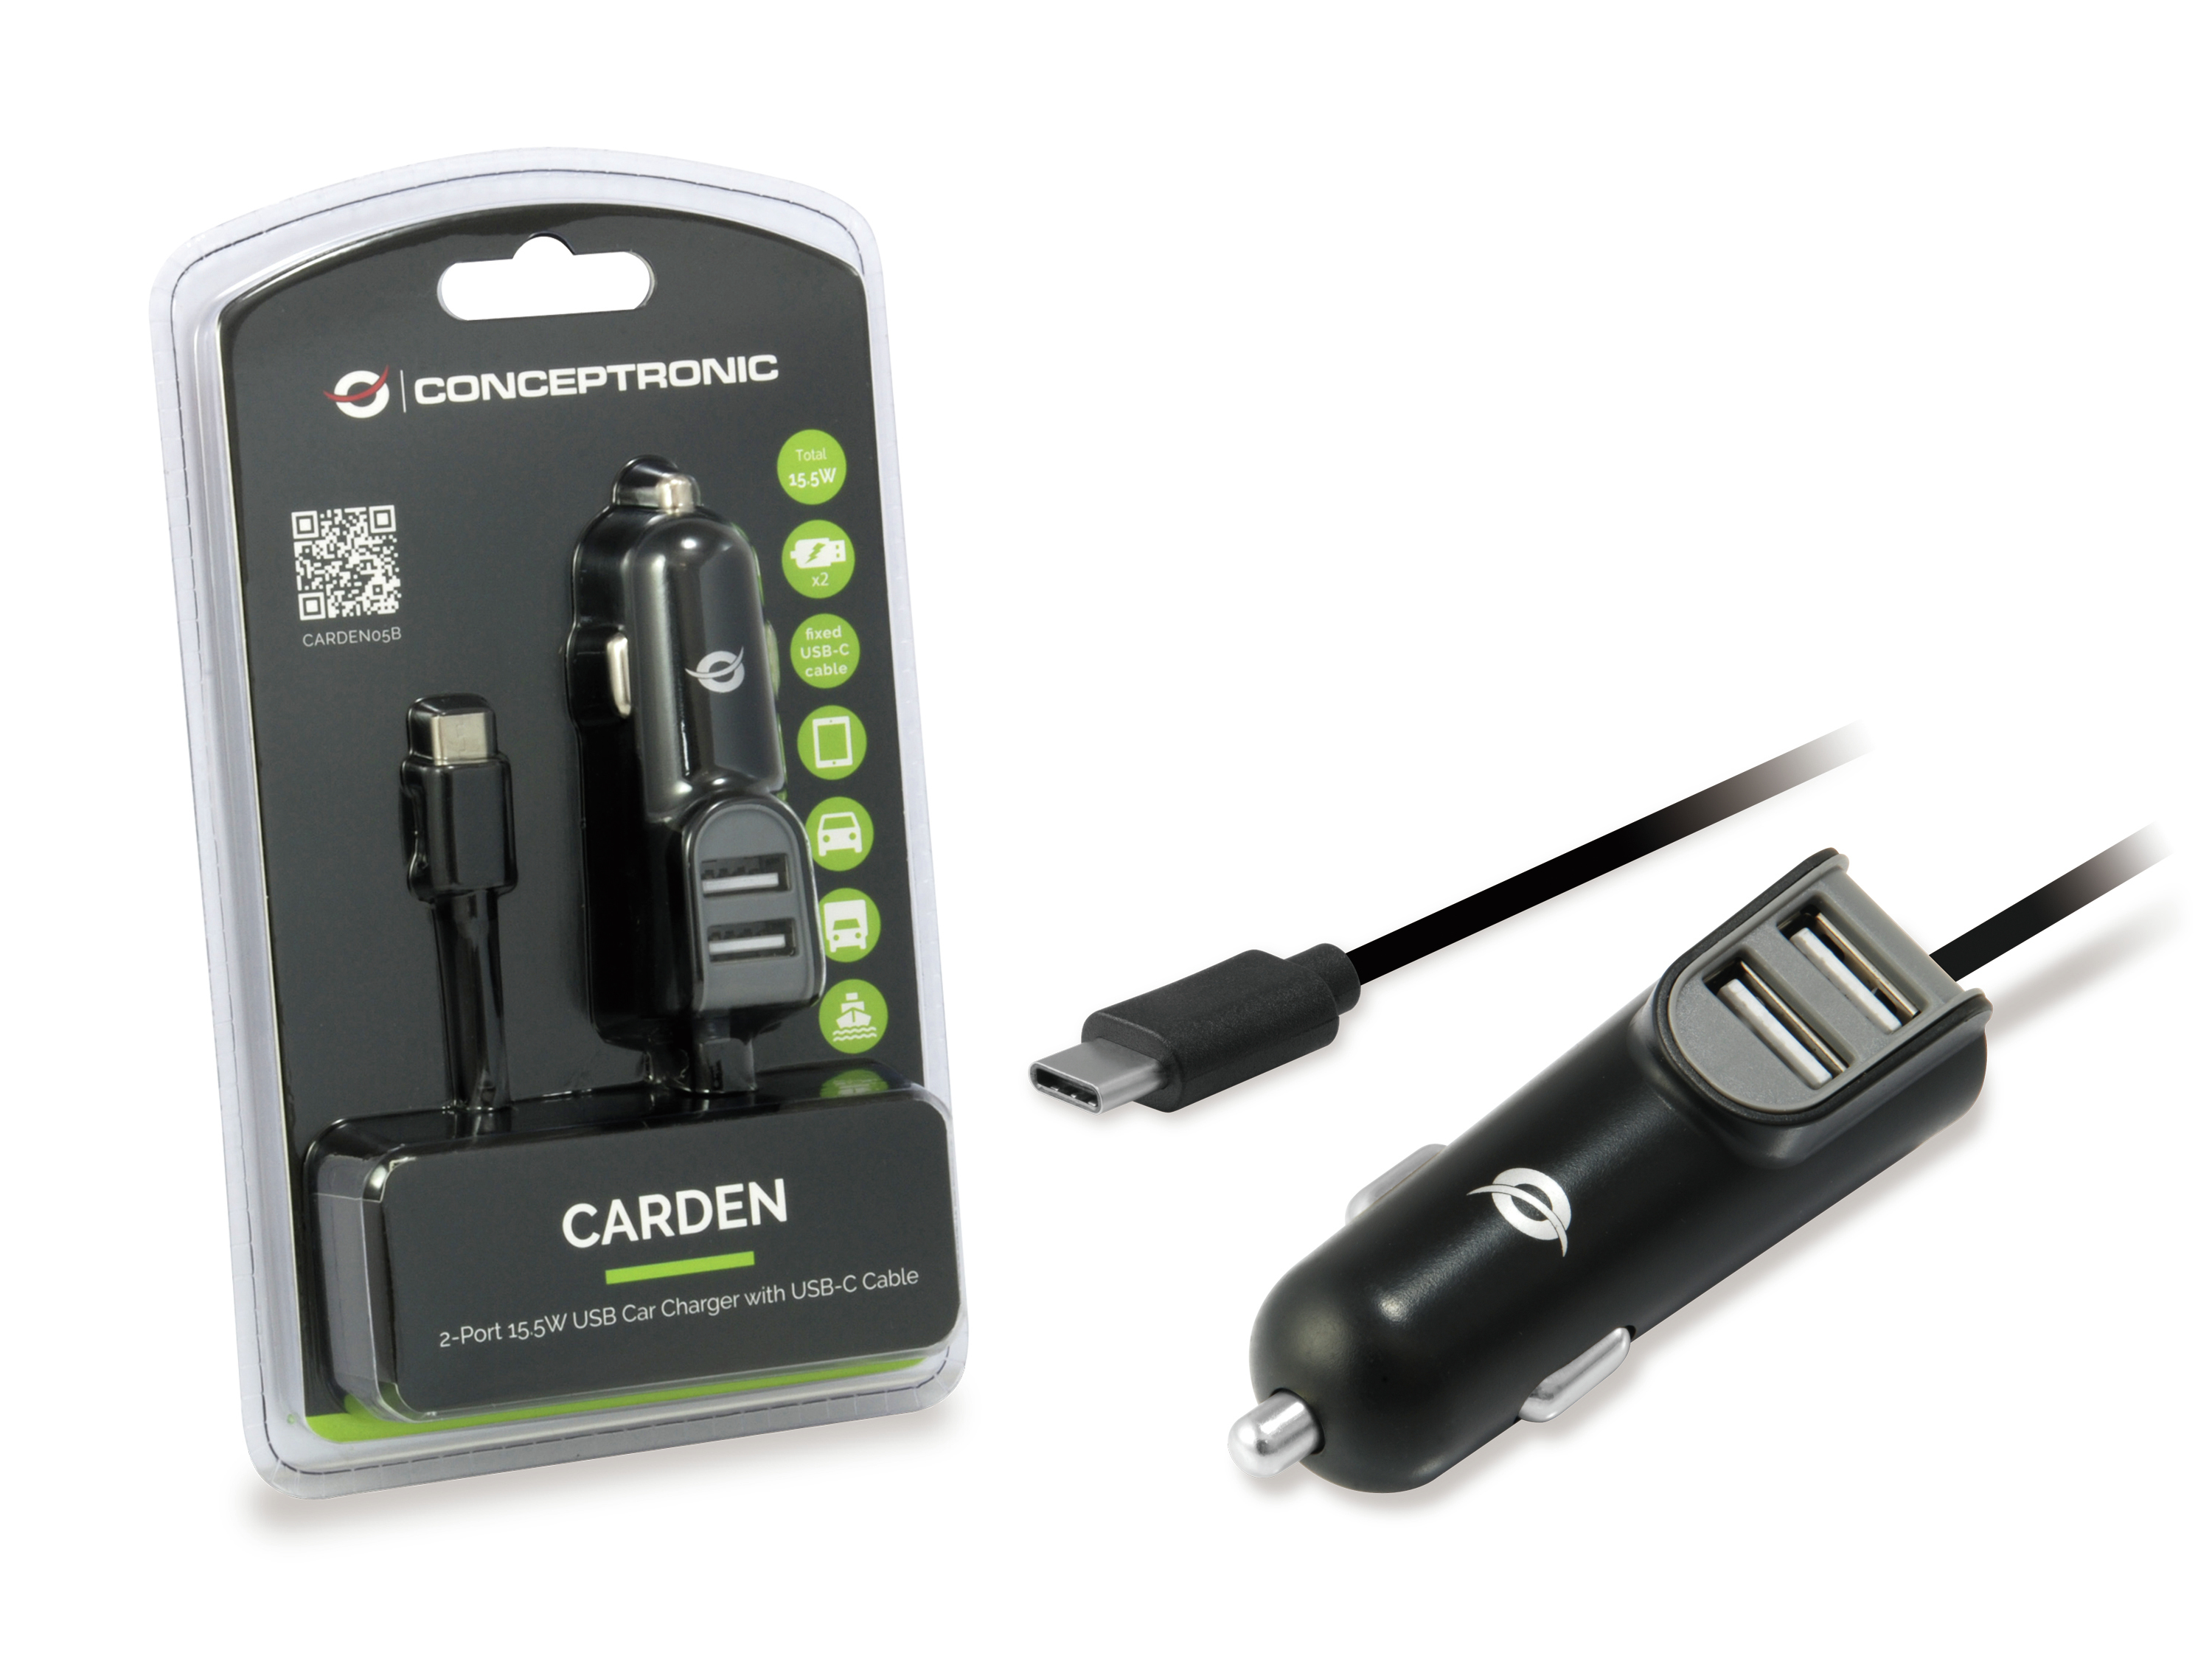 Conceptronic CARDEN - Auto-Netzteil - 15.5 Watt - 3.1 A - 3 Ausgabeanschlussstellen (USB, USB-C)